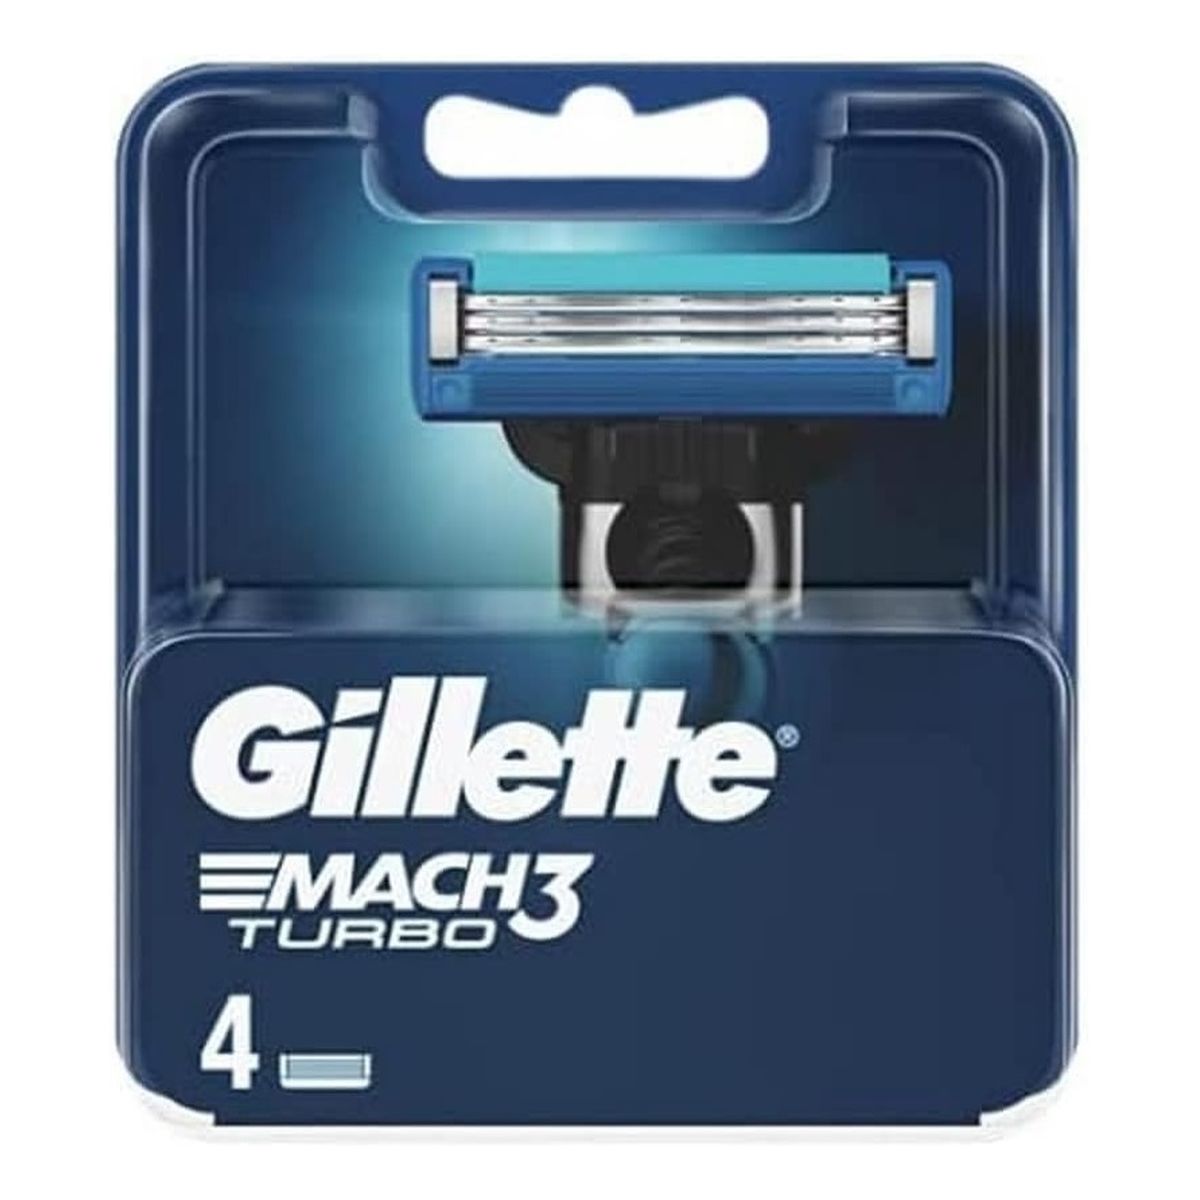 Gillette Mach3 turbo ostrza wymienne do maszynki do golenia 4szt